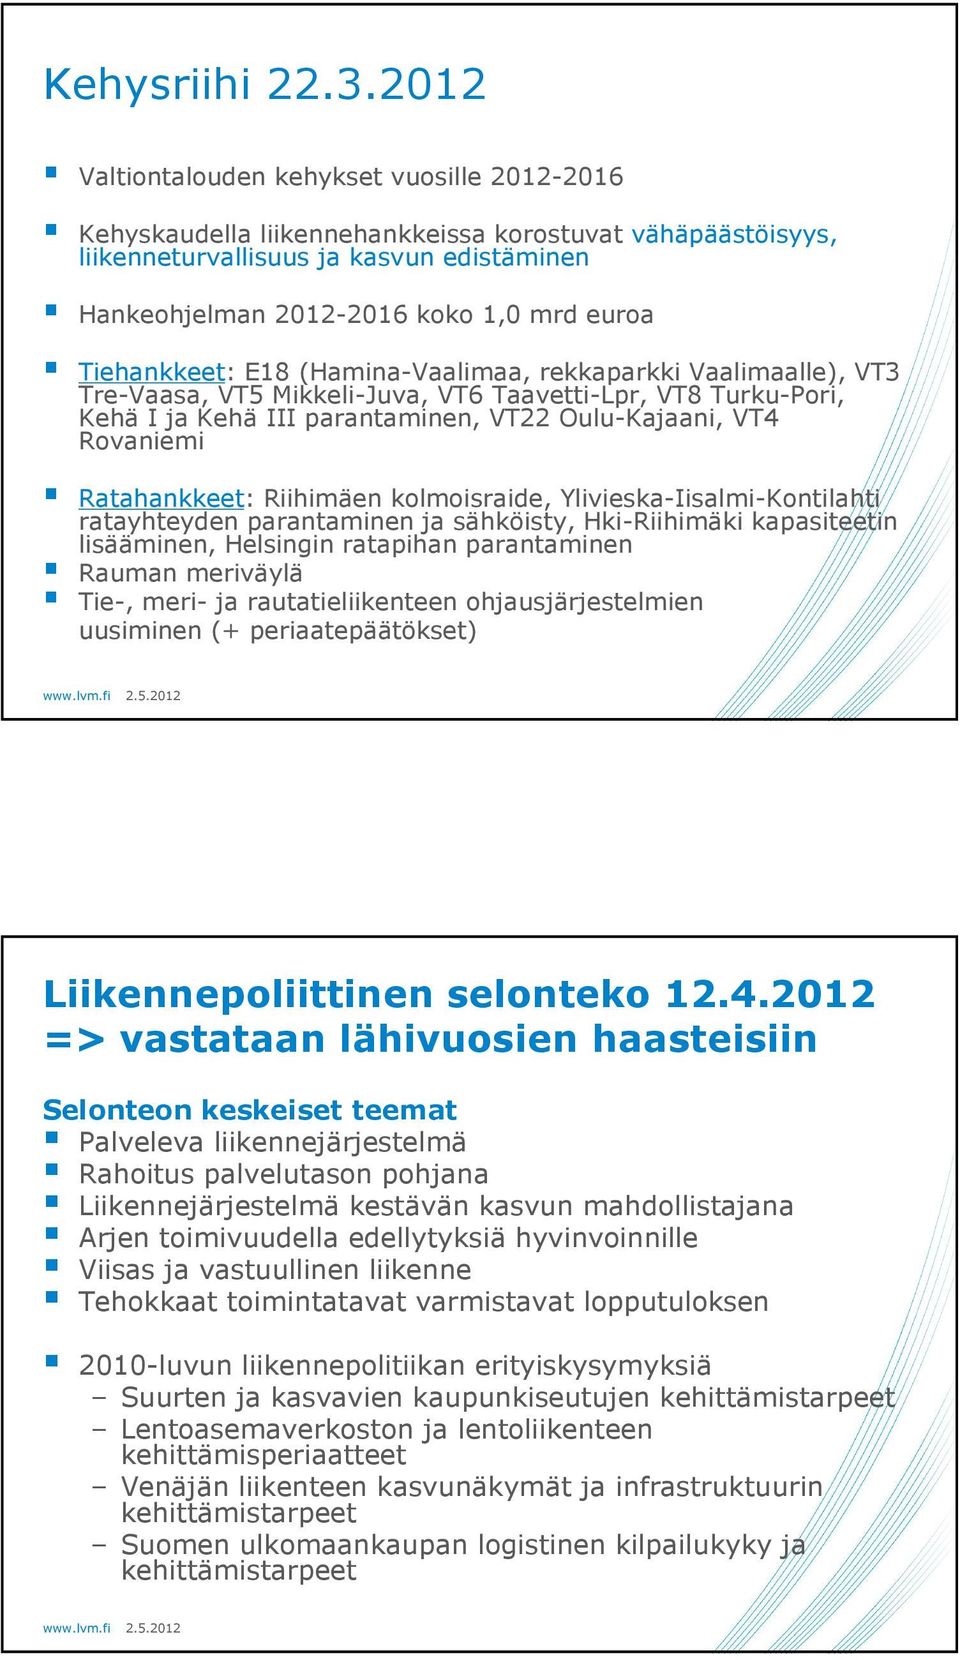 Tiehankkeet: E18 (Hamina-Vaalimaa, rekkaparkki Vaalimaalle), VT3 Tre-Vaasa, VT5 Mikkeli-Juva, VT6 Taavetti-Lpr, VT8 Turku-Pori, Kehä I ja Kehä III parantaminen, VT22 Oulu-Kajaani, VT4 Rovaniemi